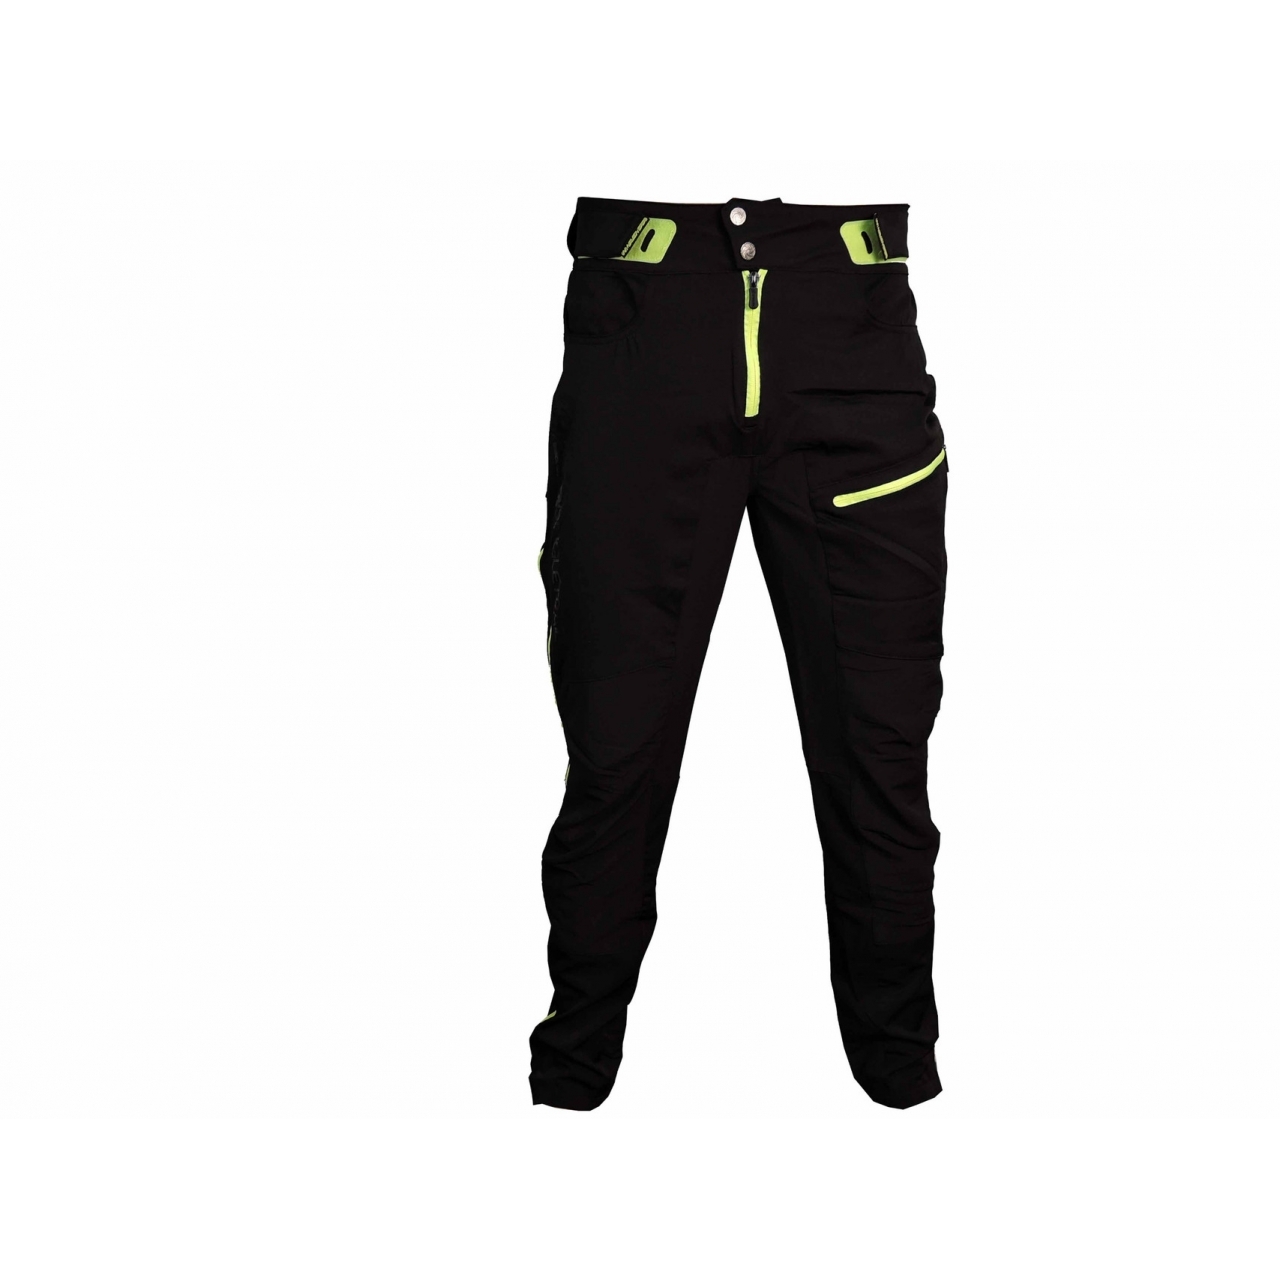 Kalhoty unisex Haven Singletrail - černé-zelené, L